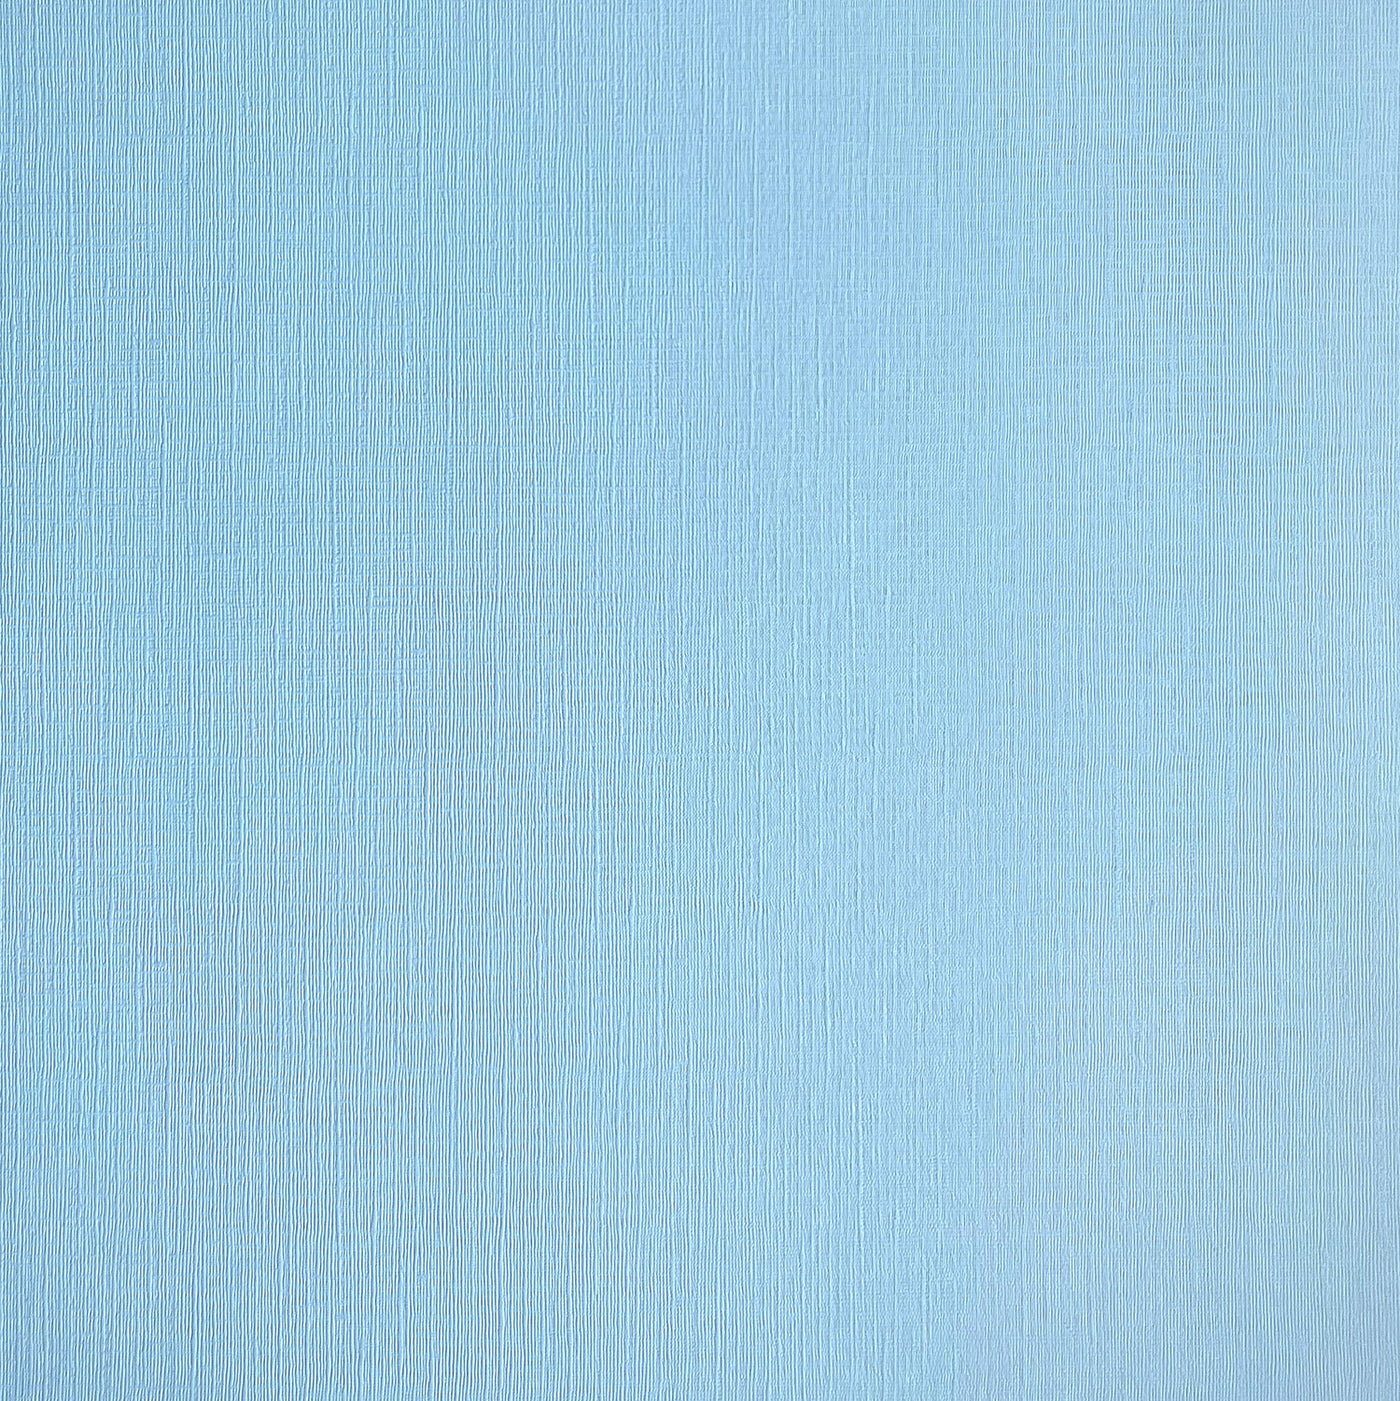 SKY - Textured 12x12 Cardstock - Sky blue textured scrapbook paper